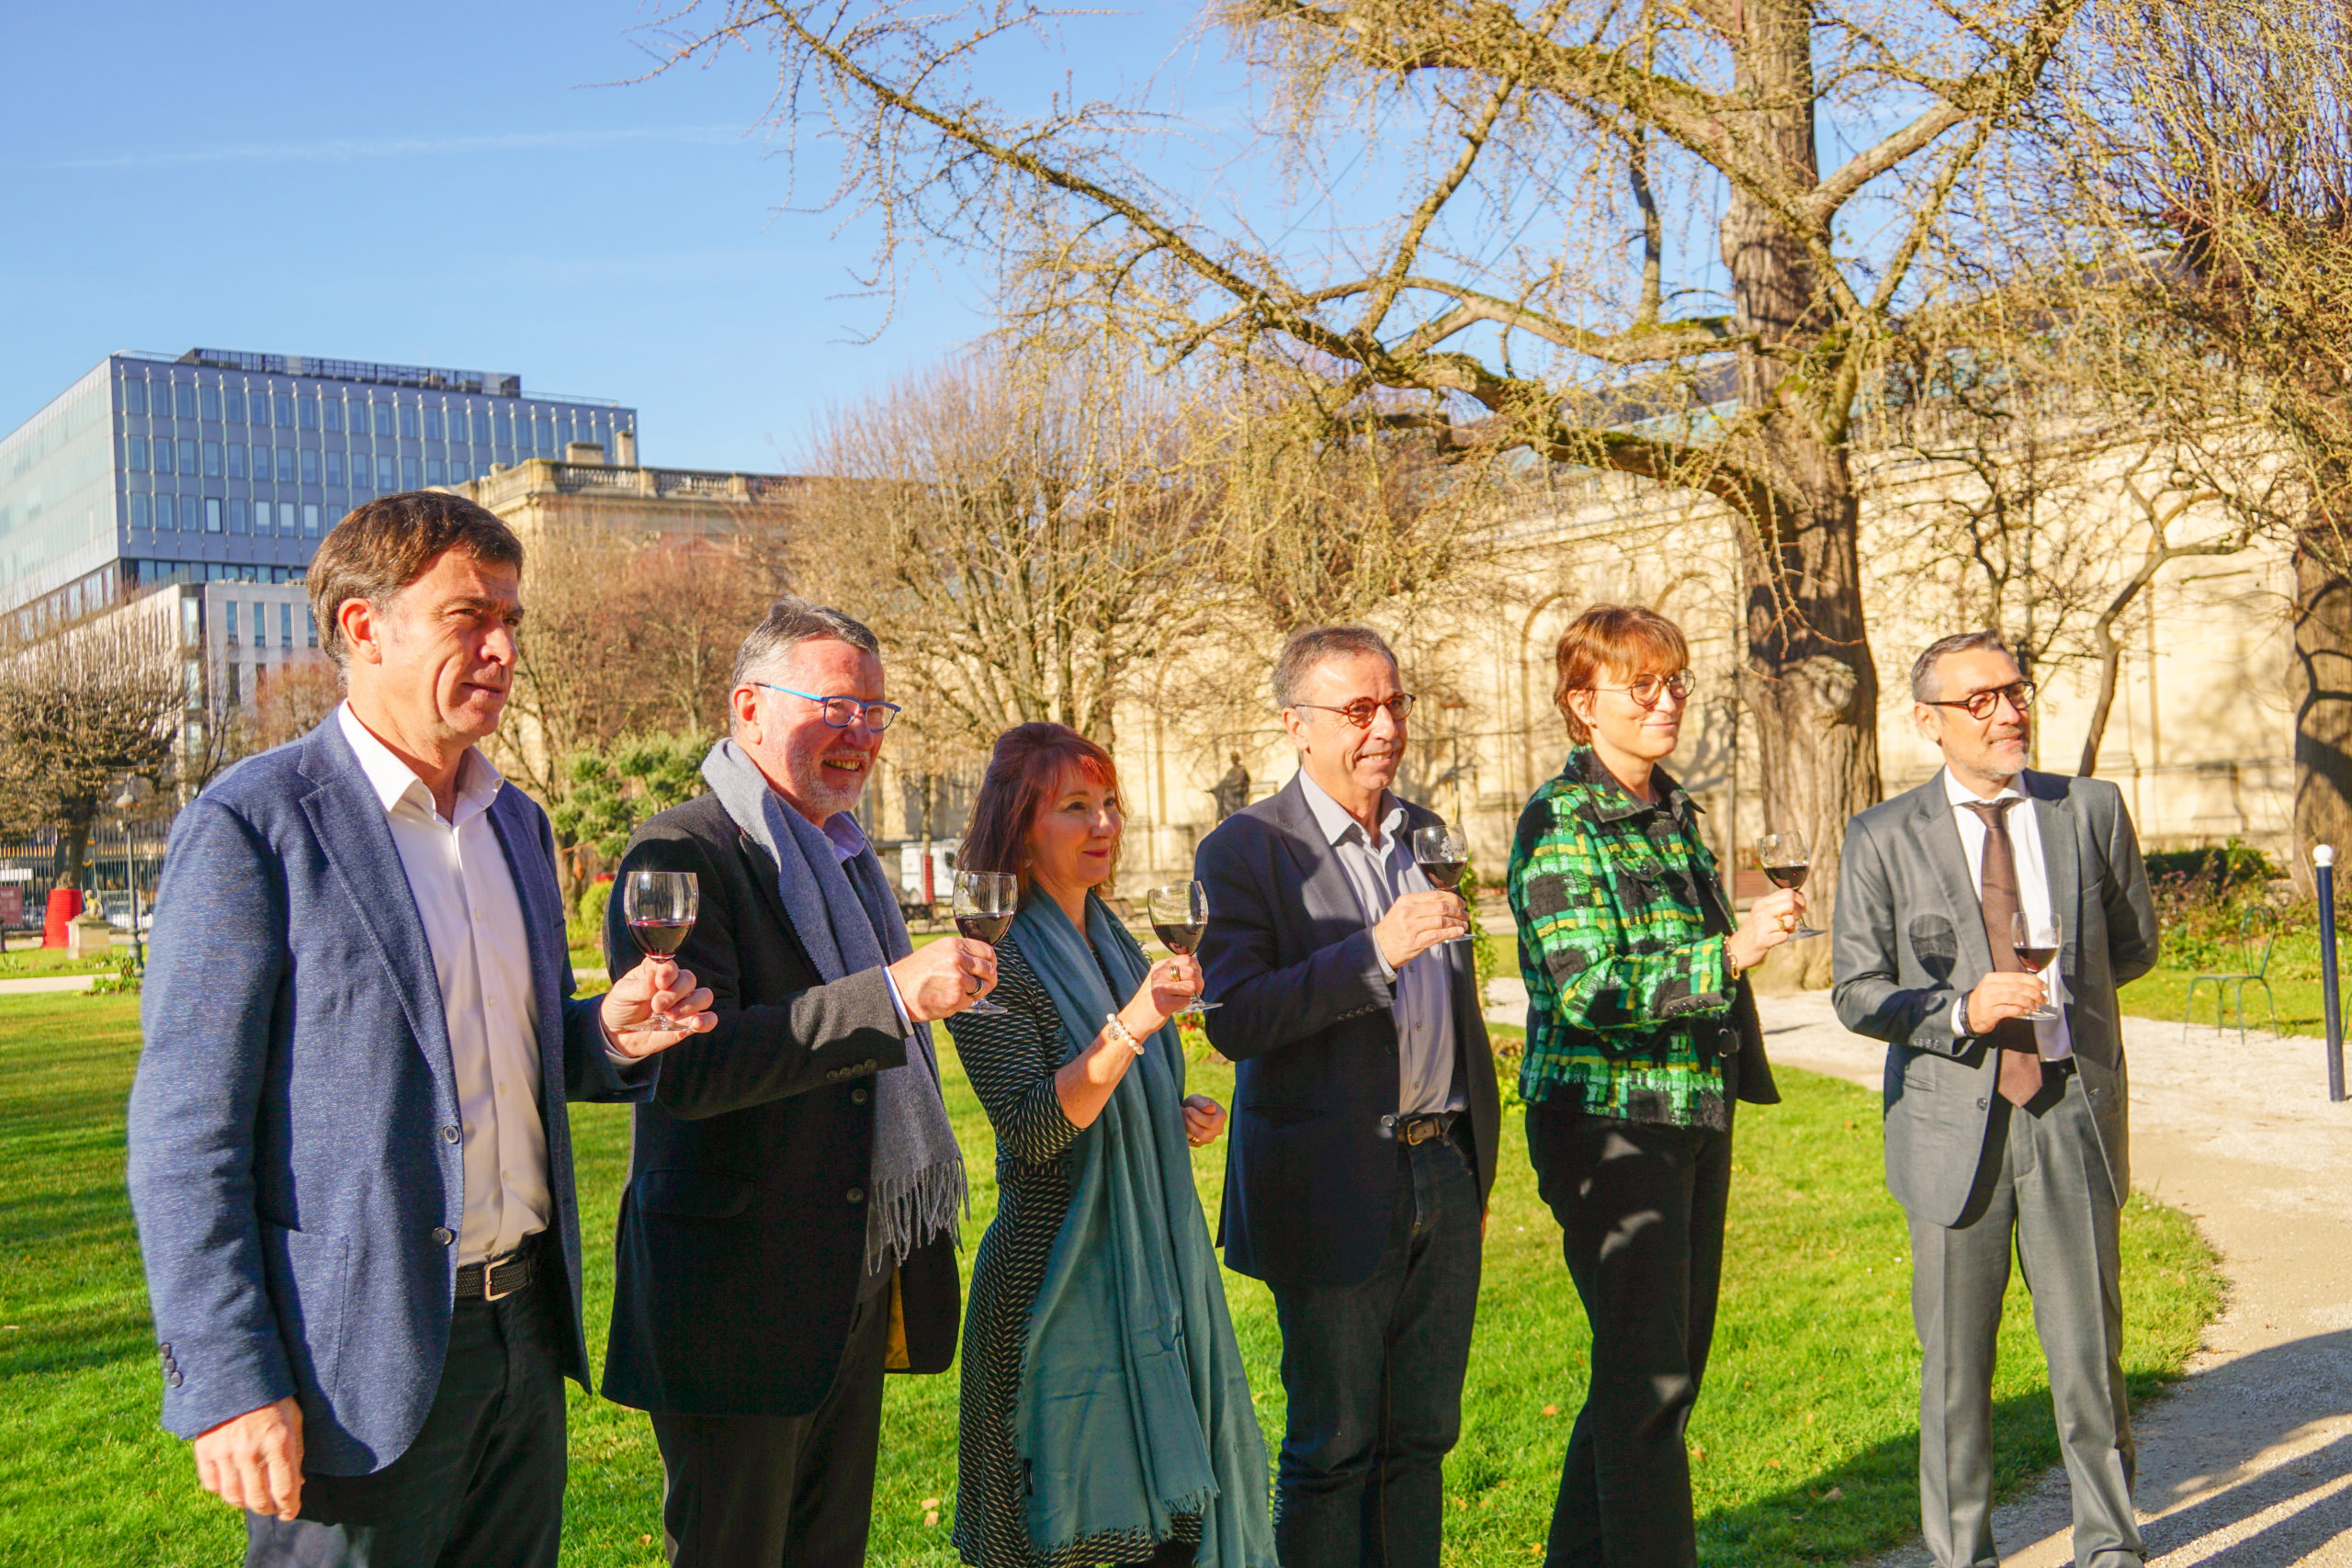 Lire la suite à propos de l’article Bordeaux Wine Week, un rassemblement professionnel, culturel et festif sur 10 jours